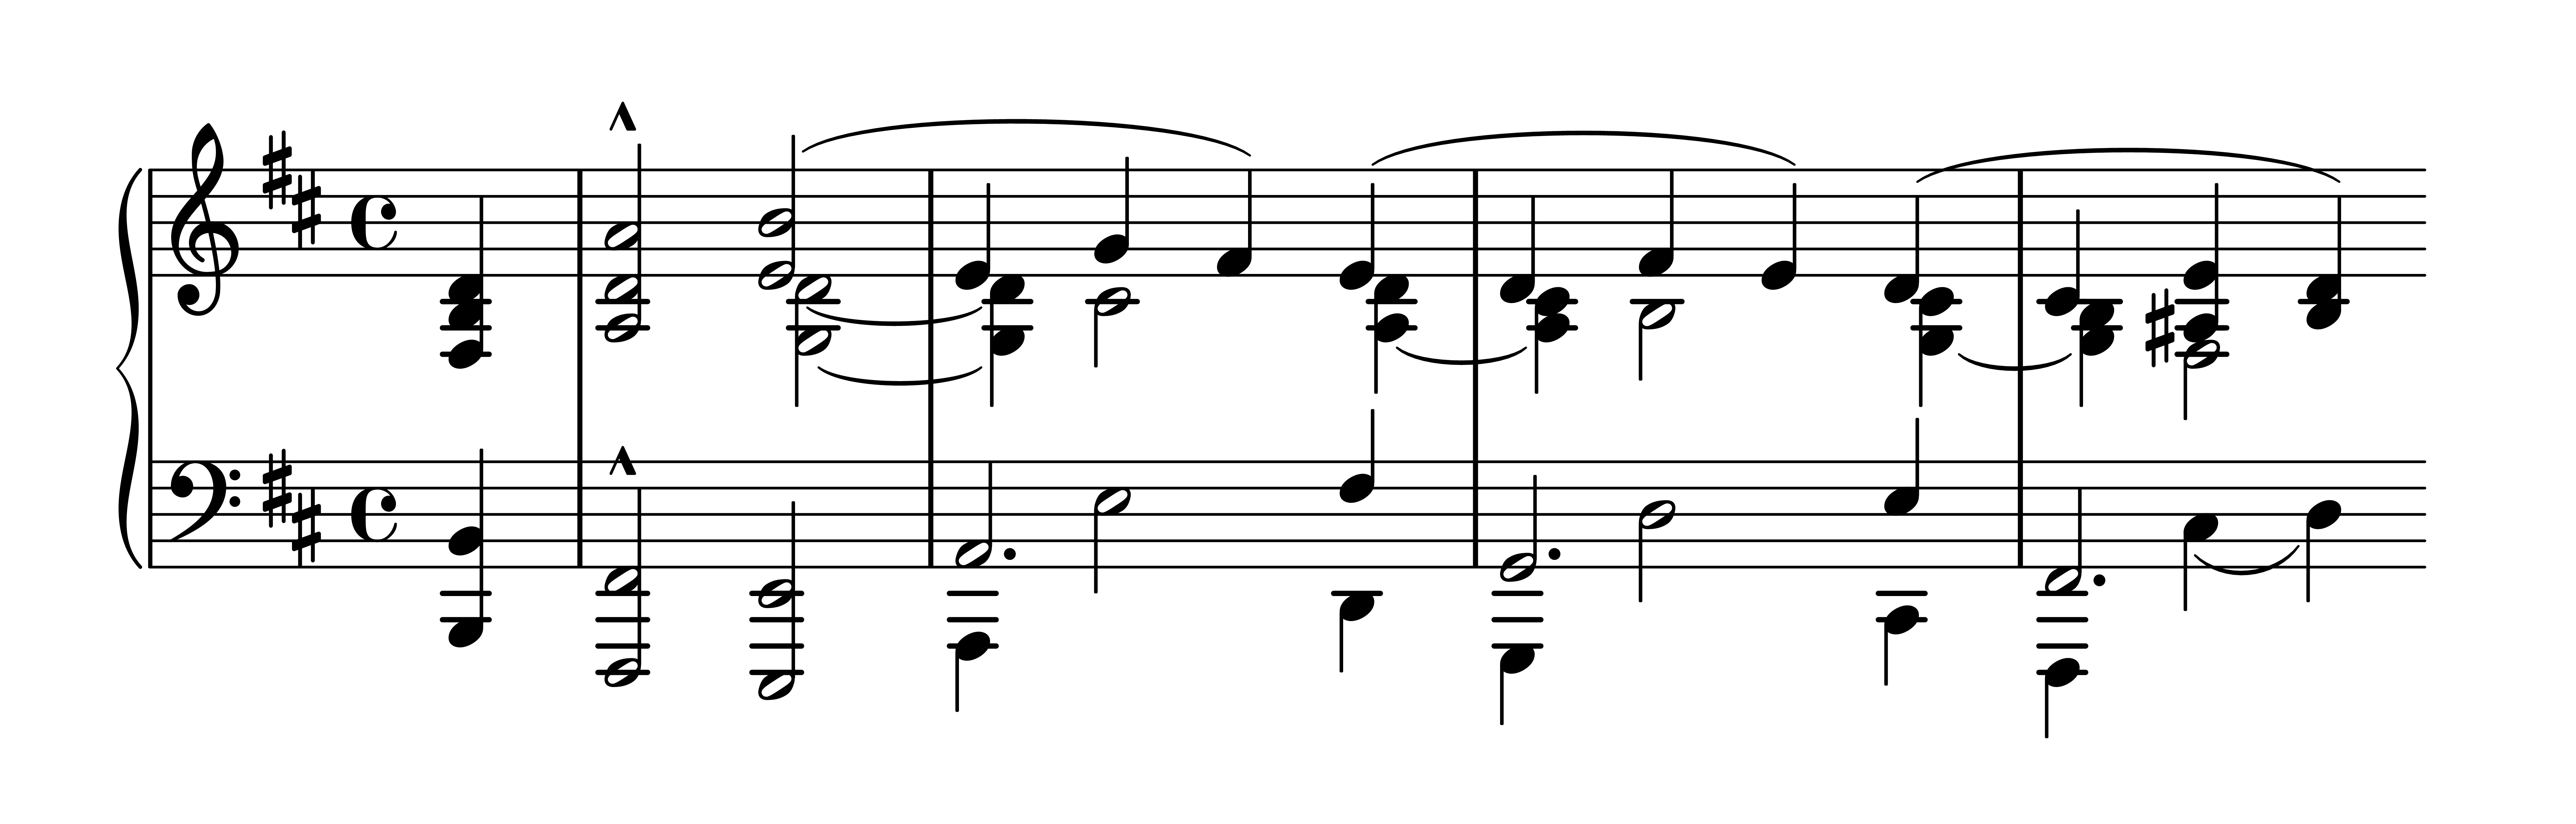 Es. 3: Robert Schumann, op. 133 n. 1, bb. 4-8